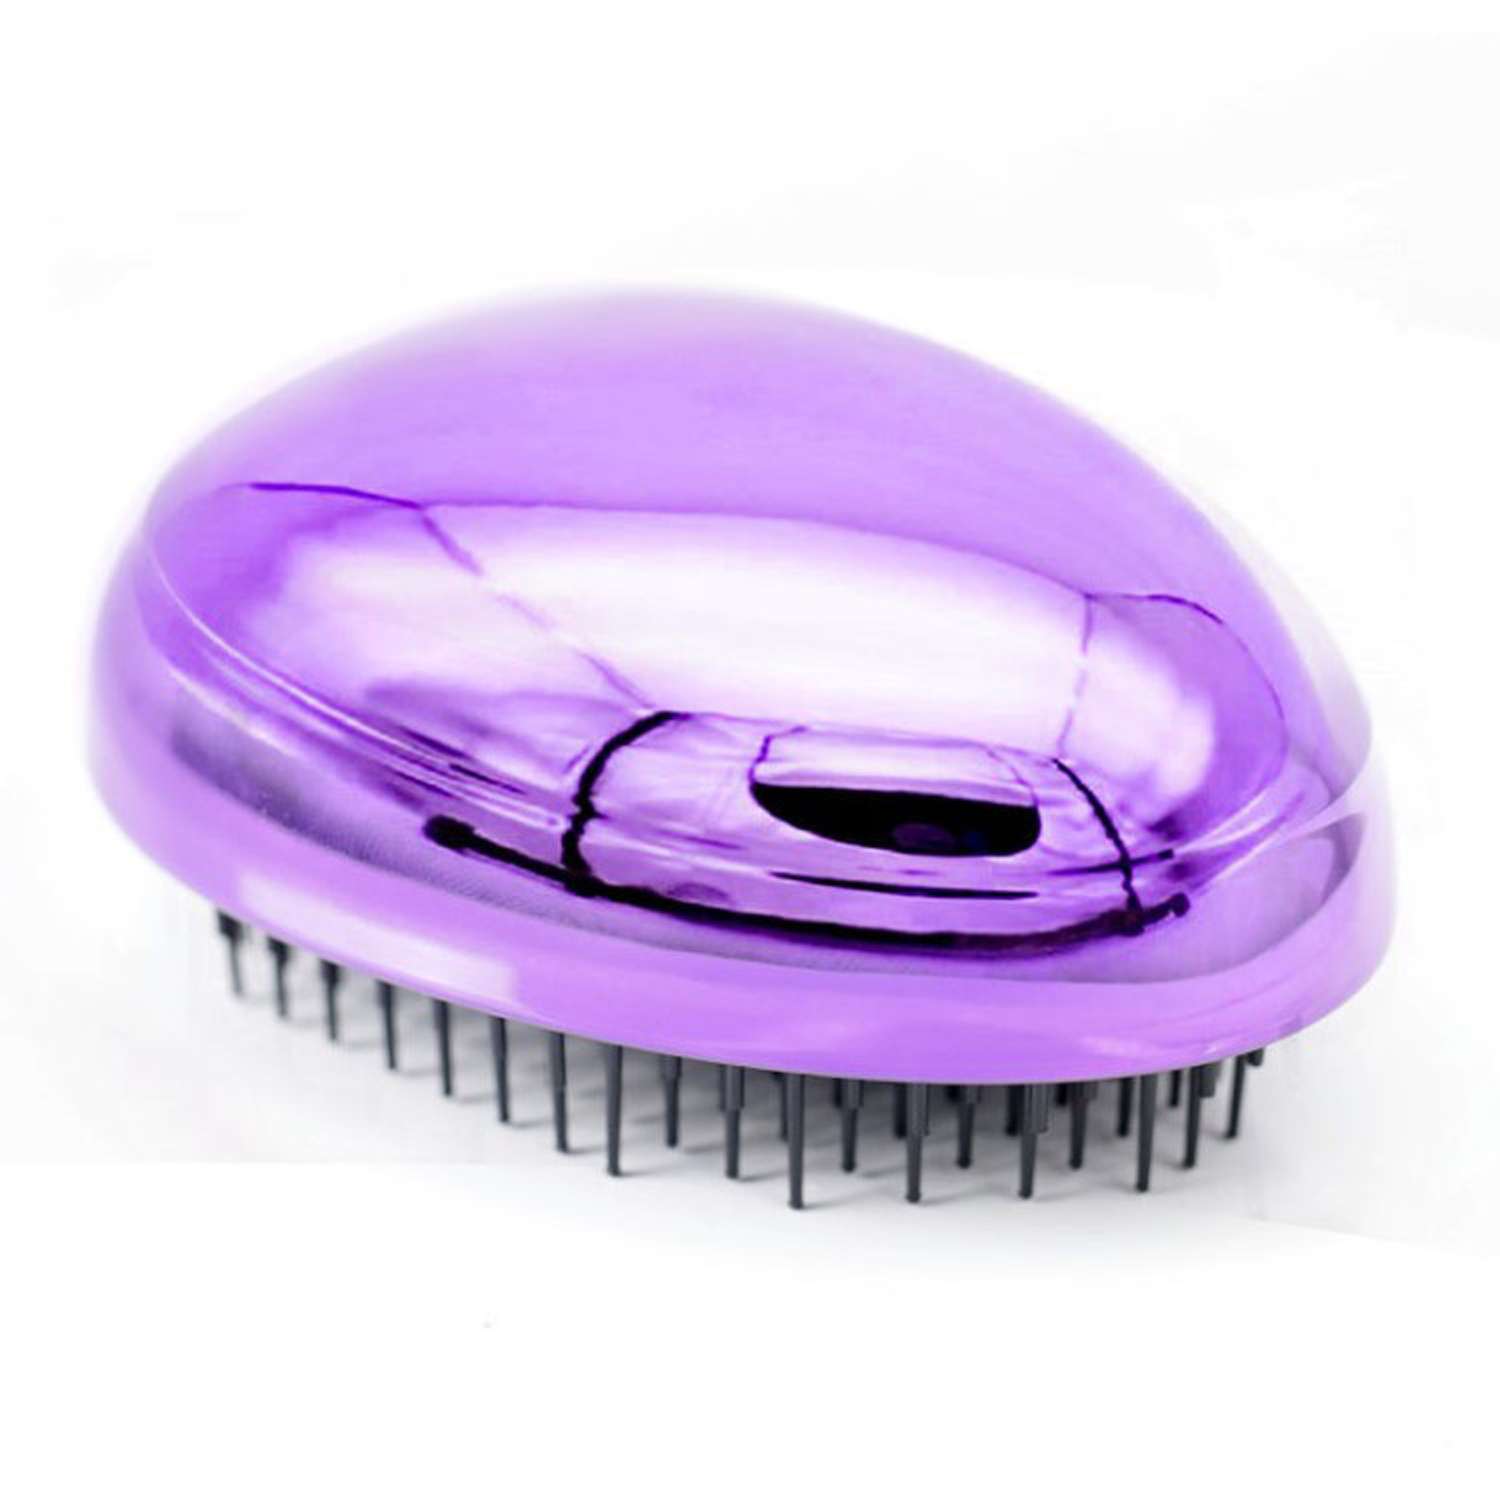 Расческа для волос Beautypedia compact фиолетовая распутывающая - фото 2